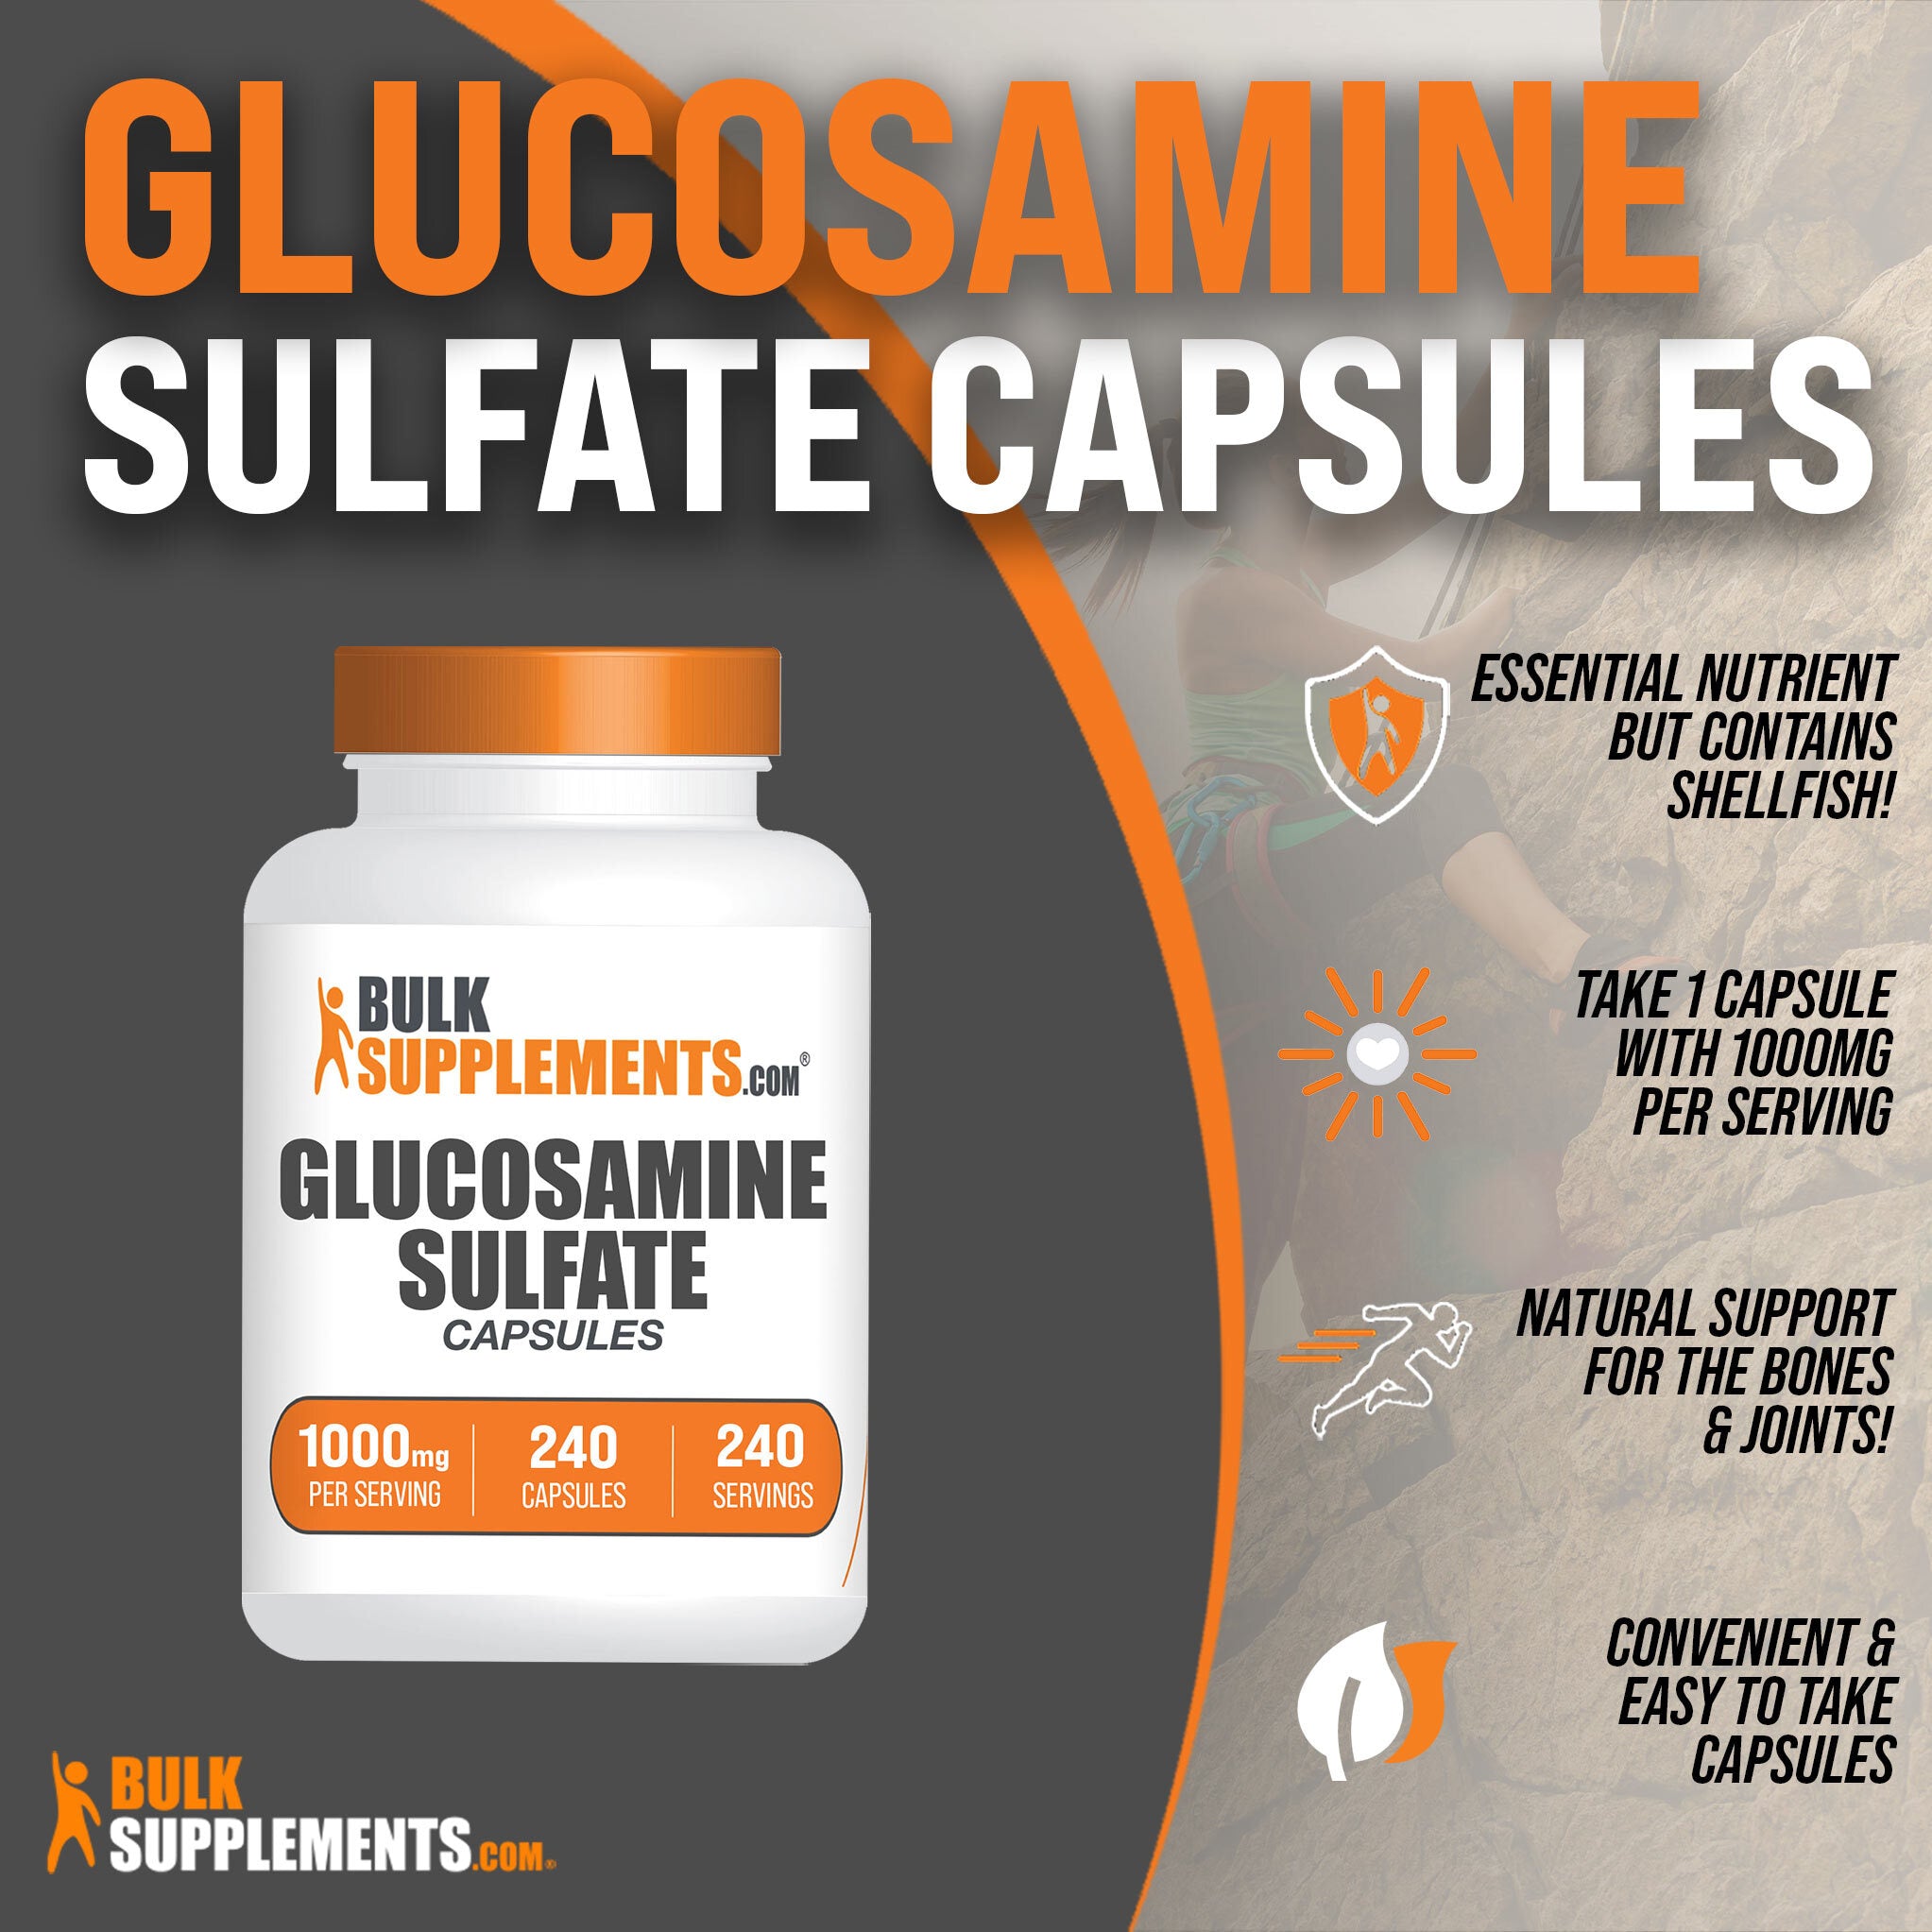 Glucosamine Sulfate Capsules